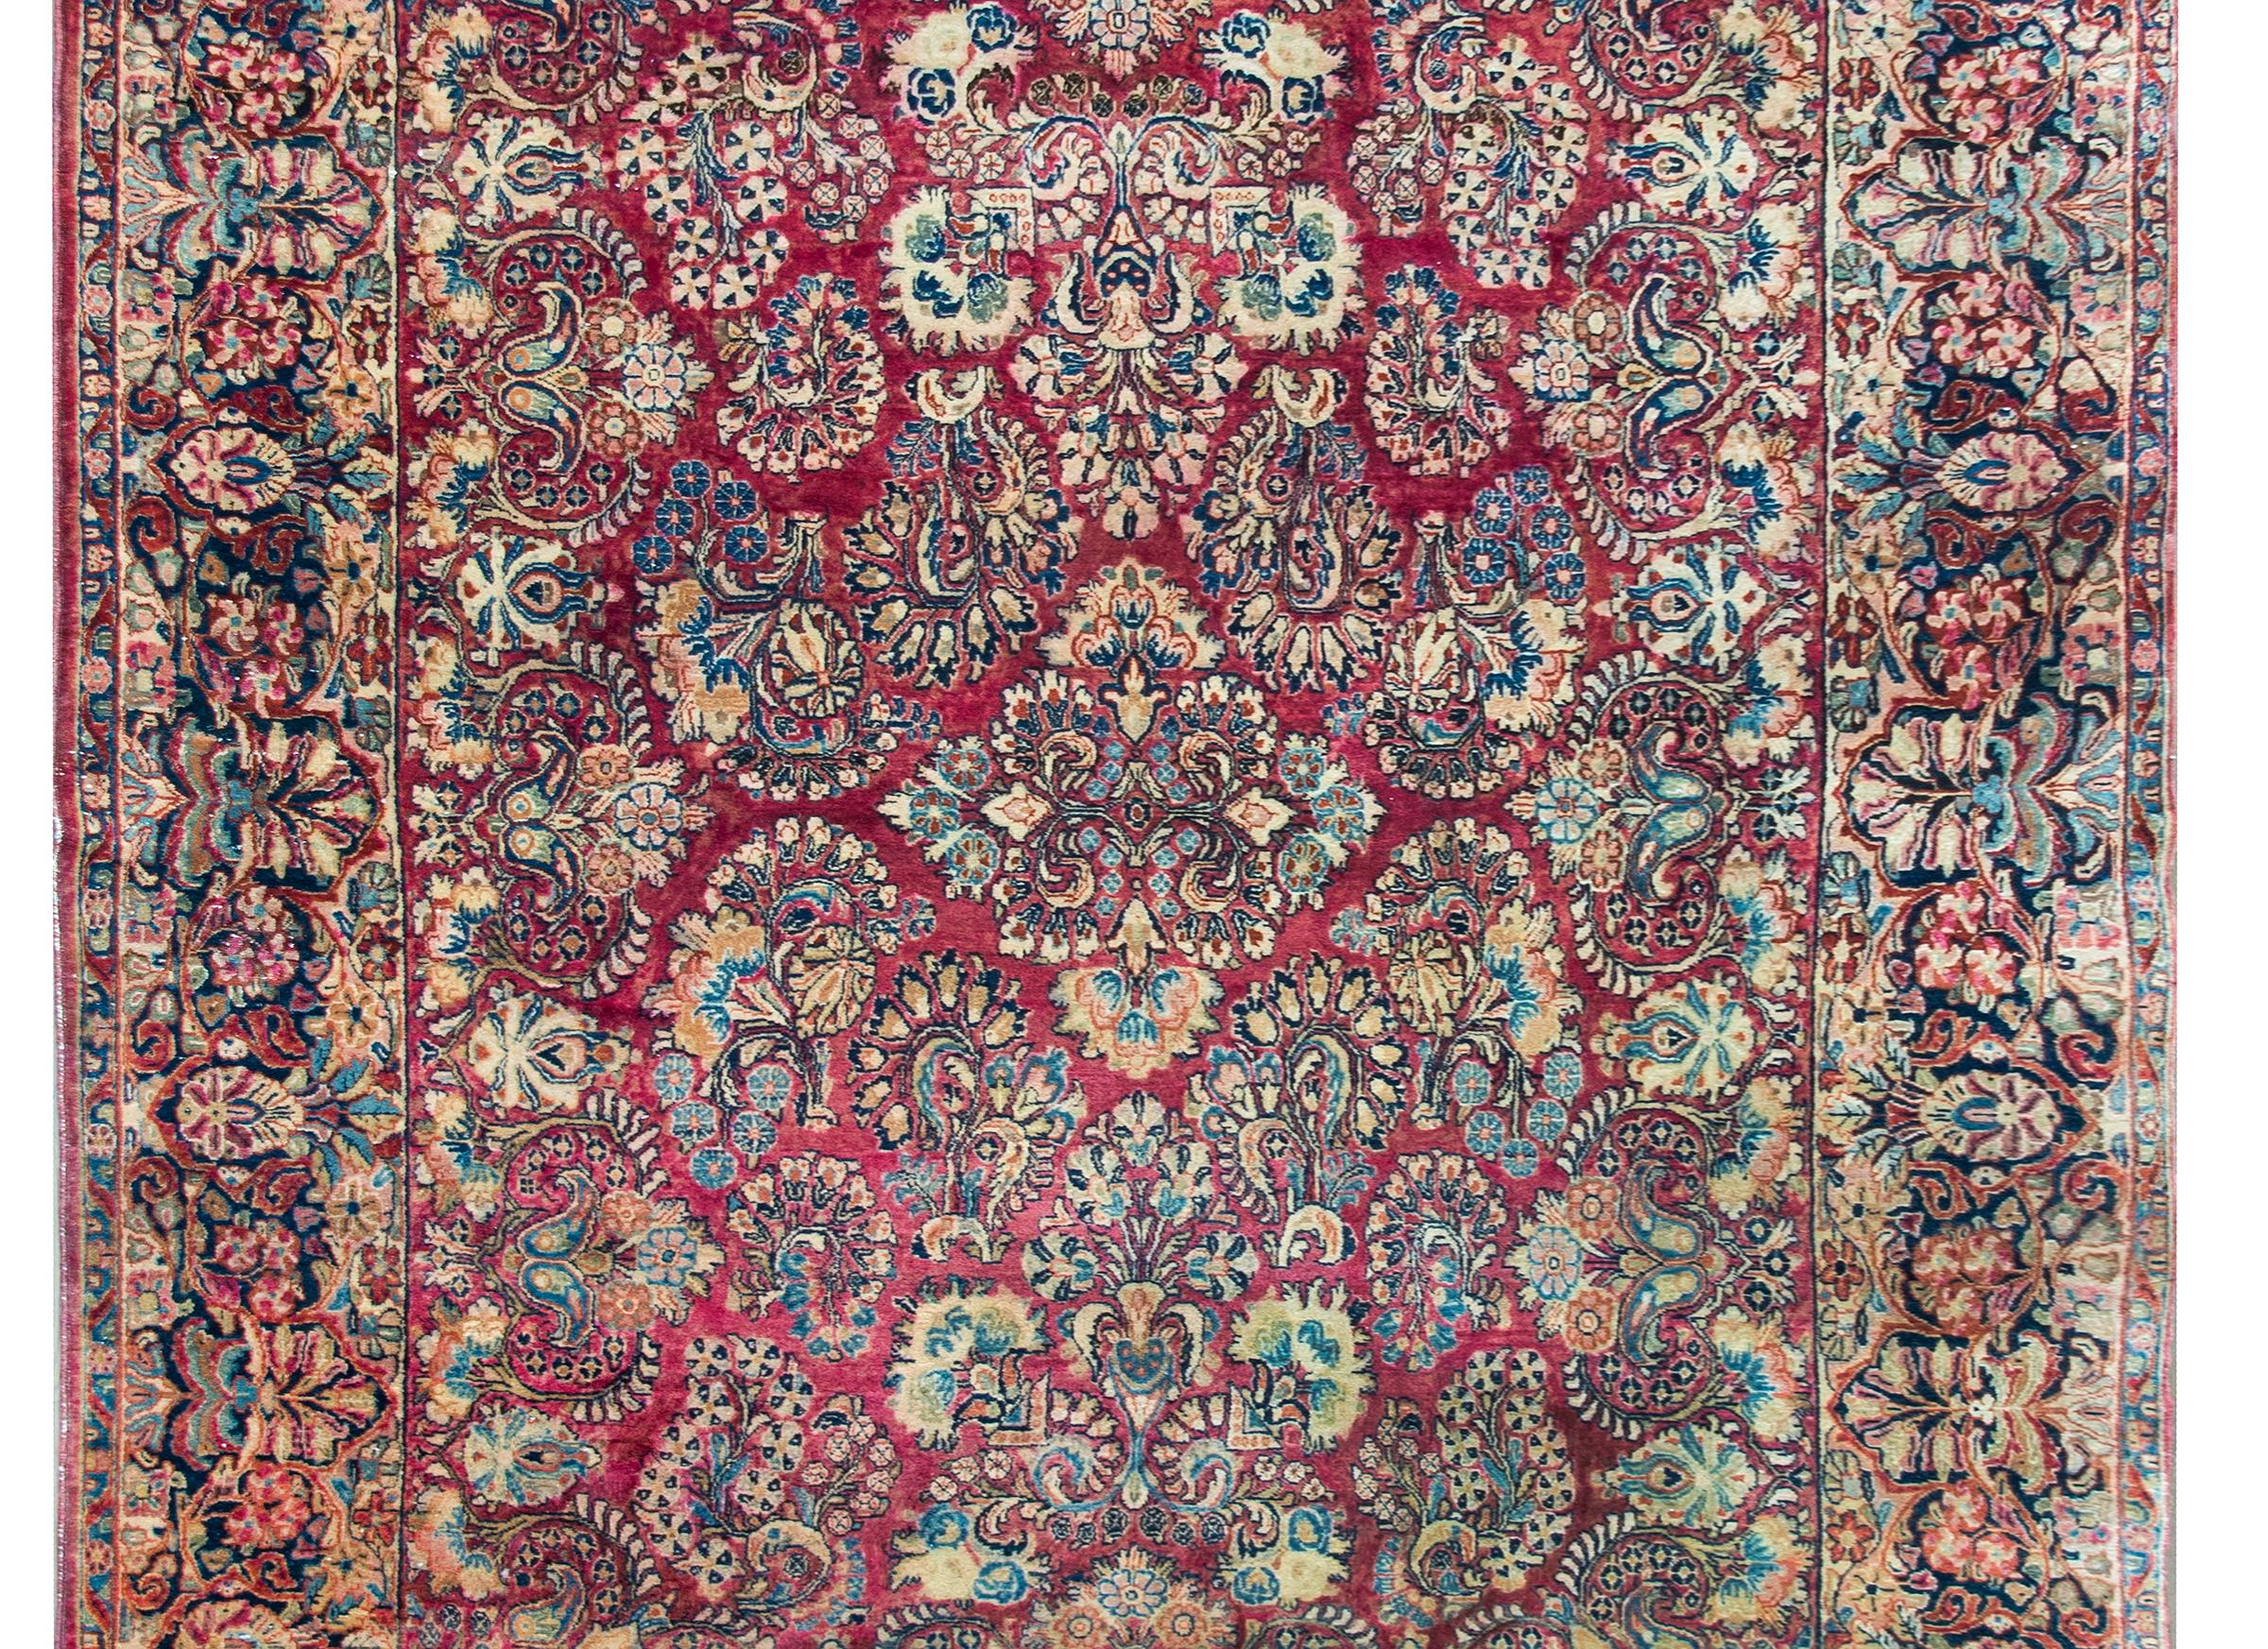 Ein schöner persischer Sarouk-Teppich aus dem frühen 20. Jahrhundert mit einem großflächigen, gespiegelten Blumenmuster mit unzähligen Blüten und Blättern, gewebt in traditionellen Sarouk-Farben in hellem und dunklem Indigo, Creme und Rosa vor einem